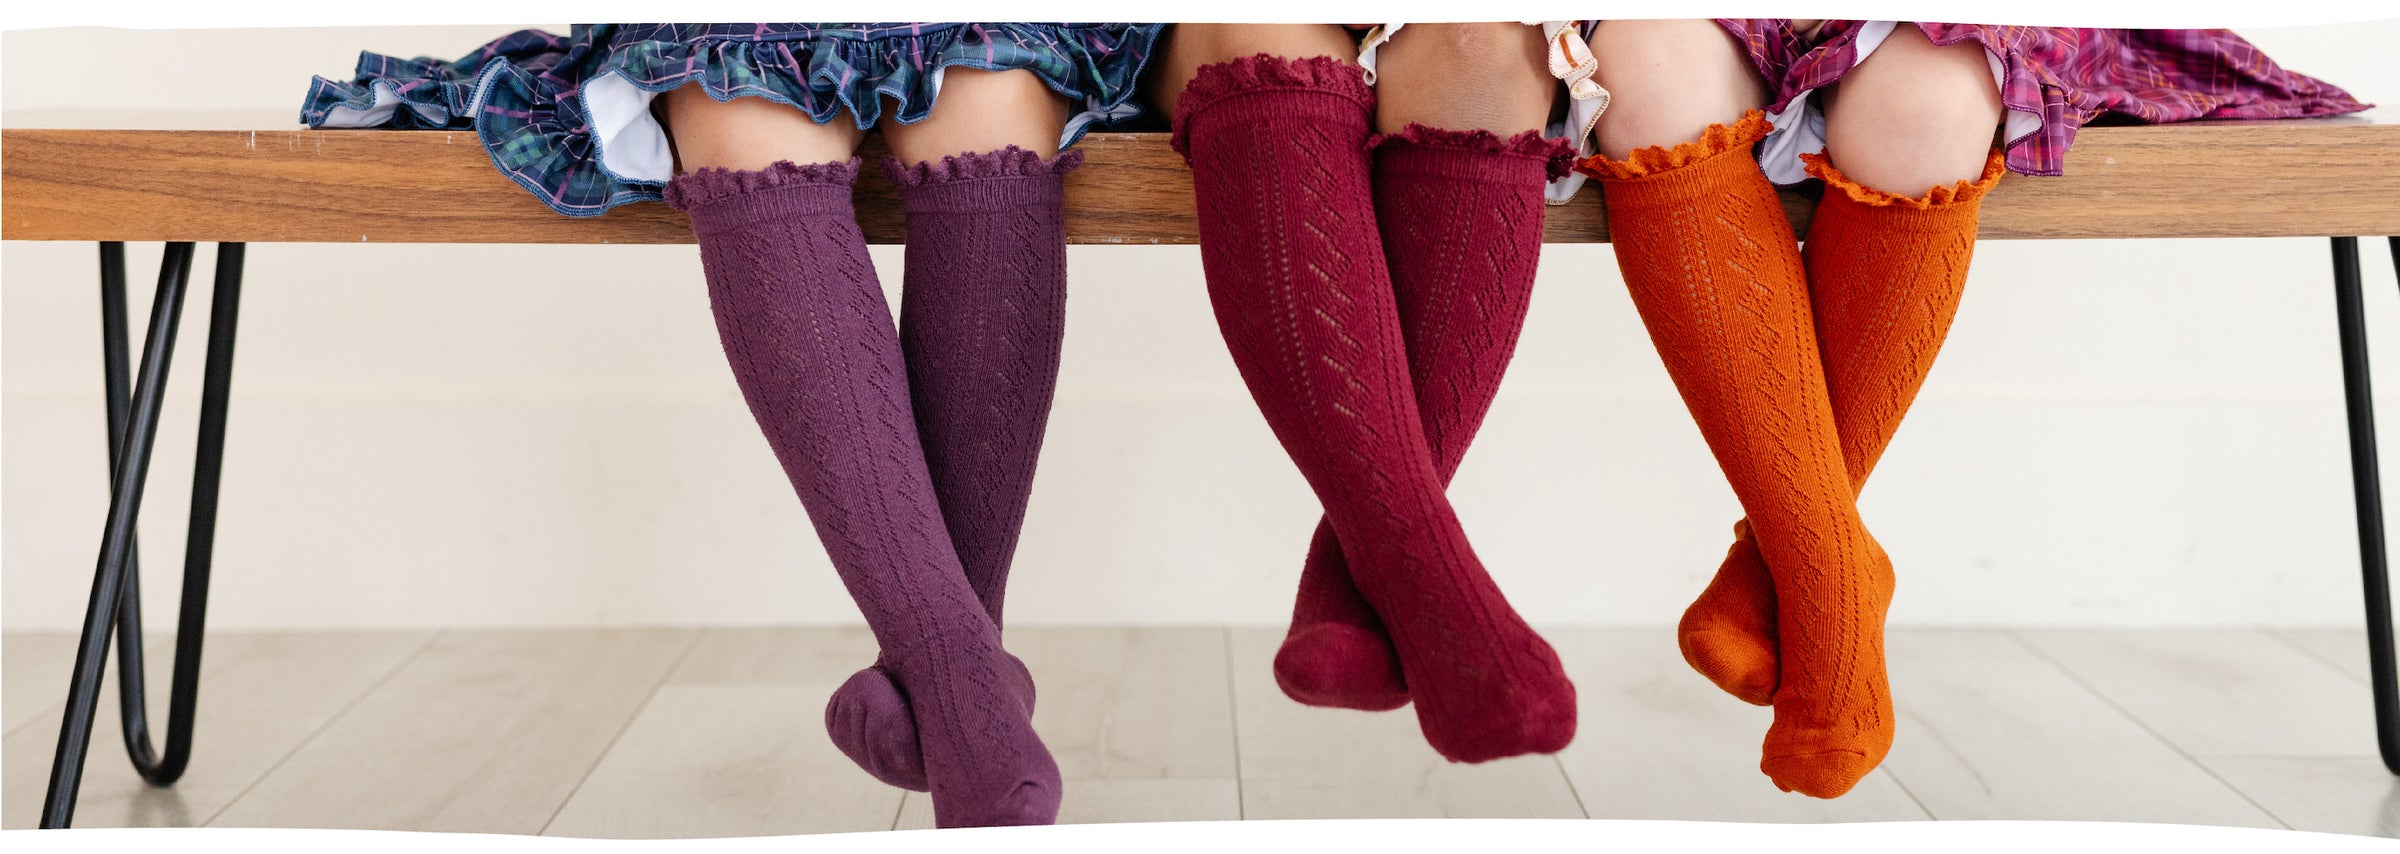 girls sitting on bench wearing fancy crochet knit knee high socks